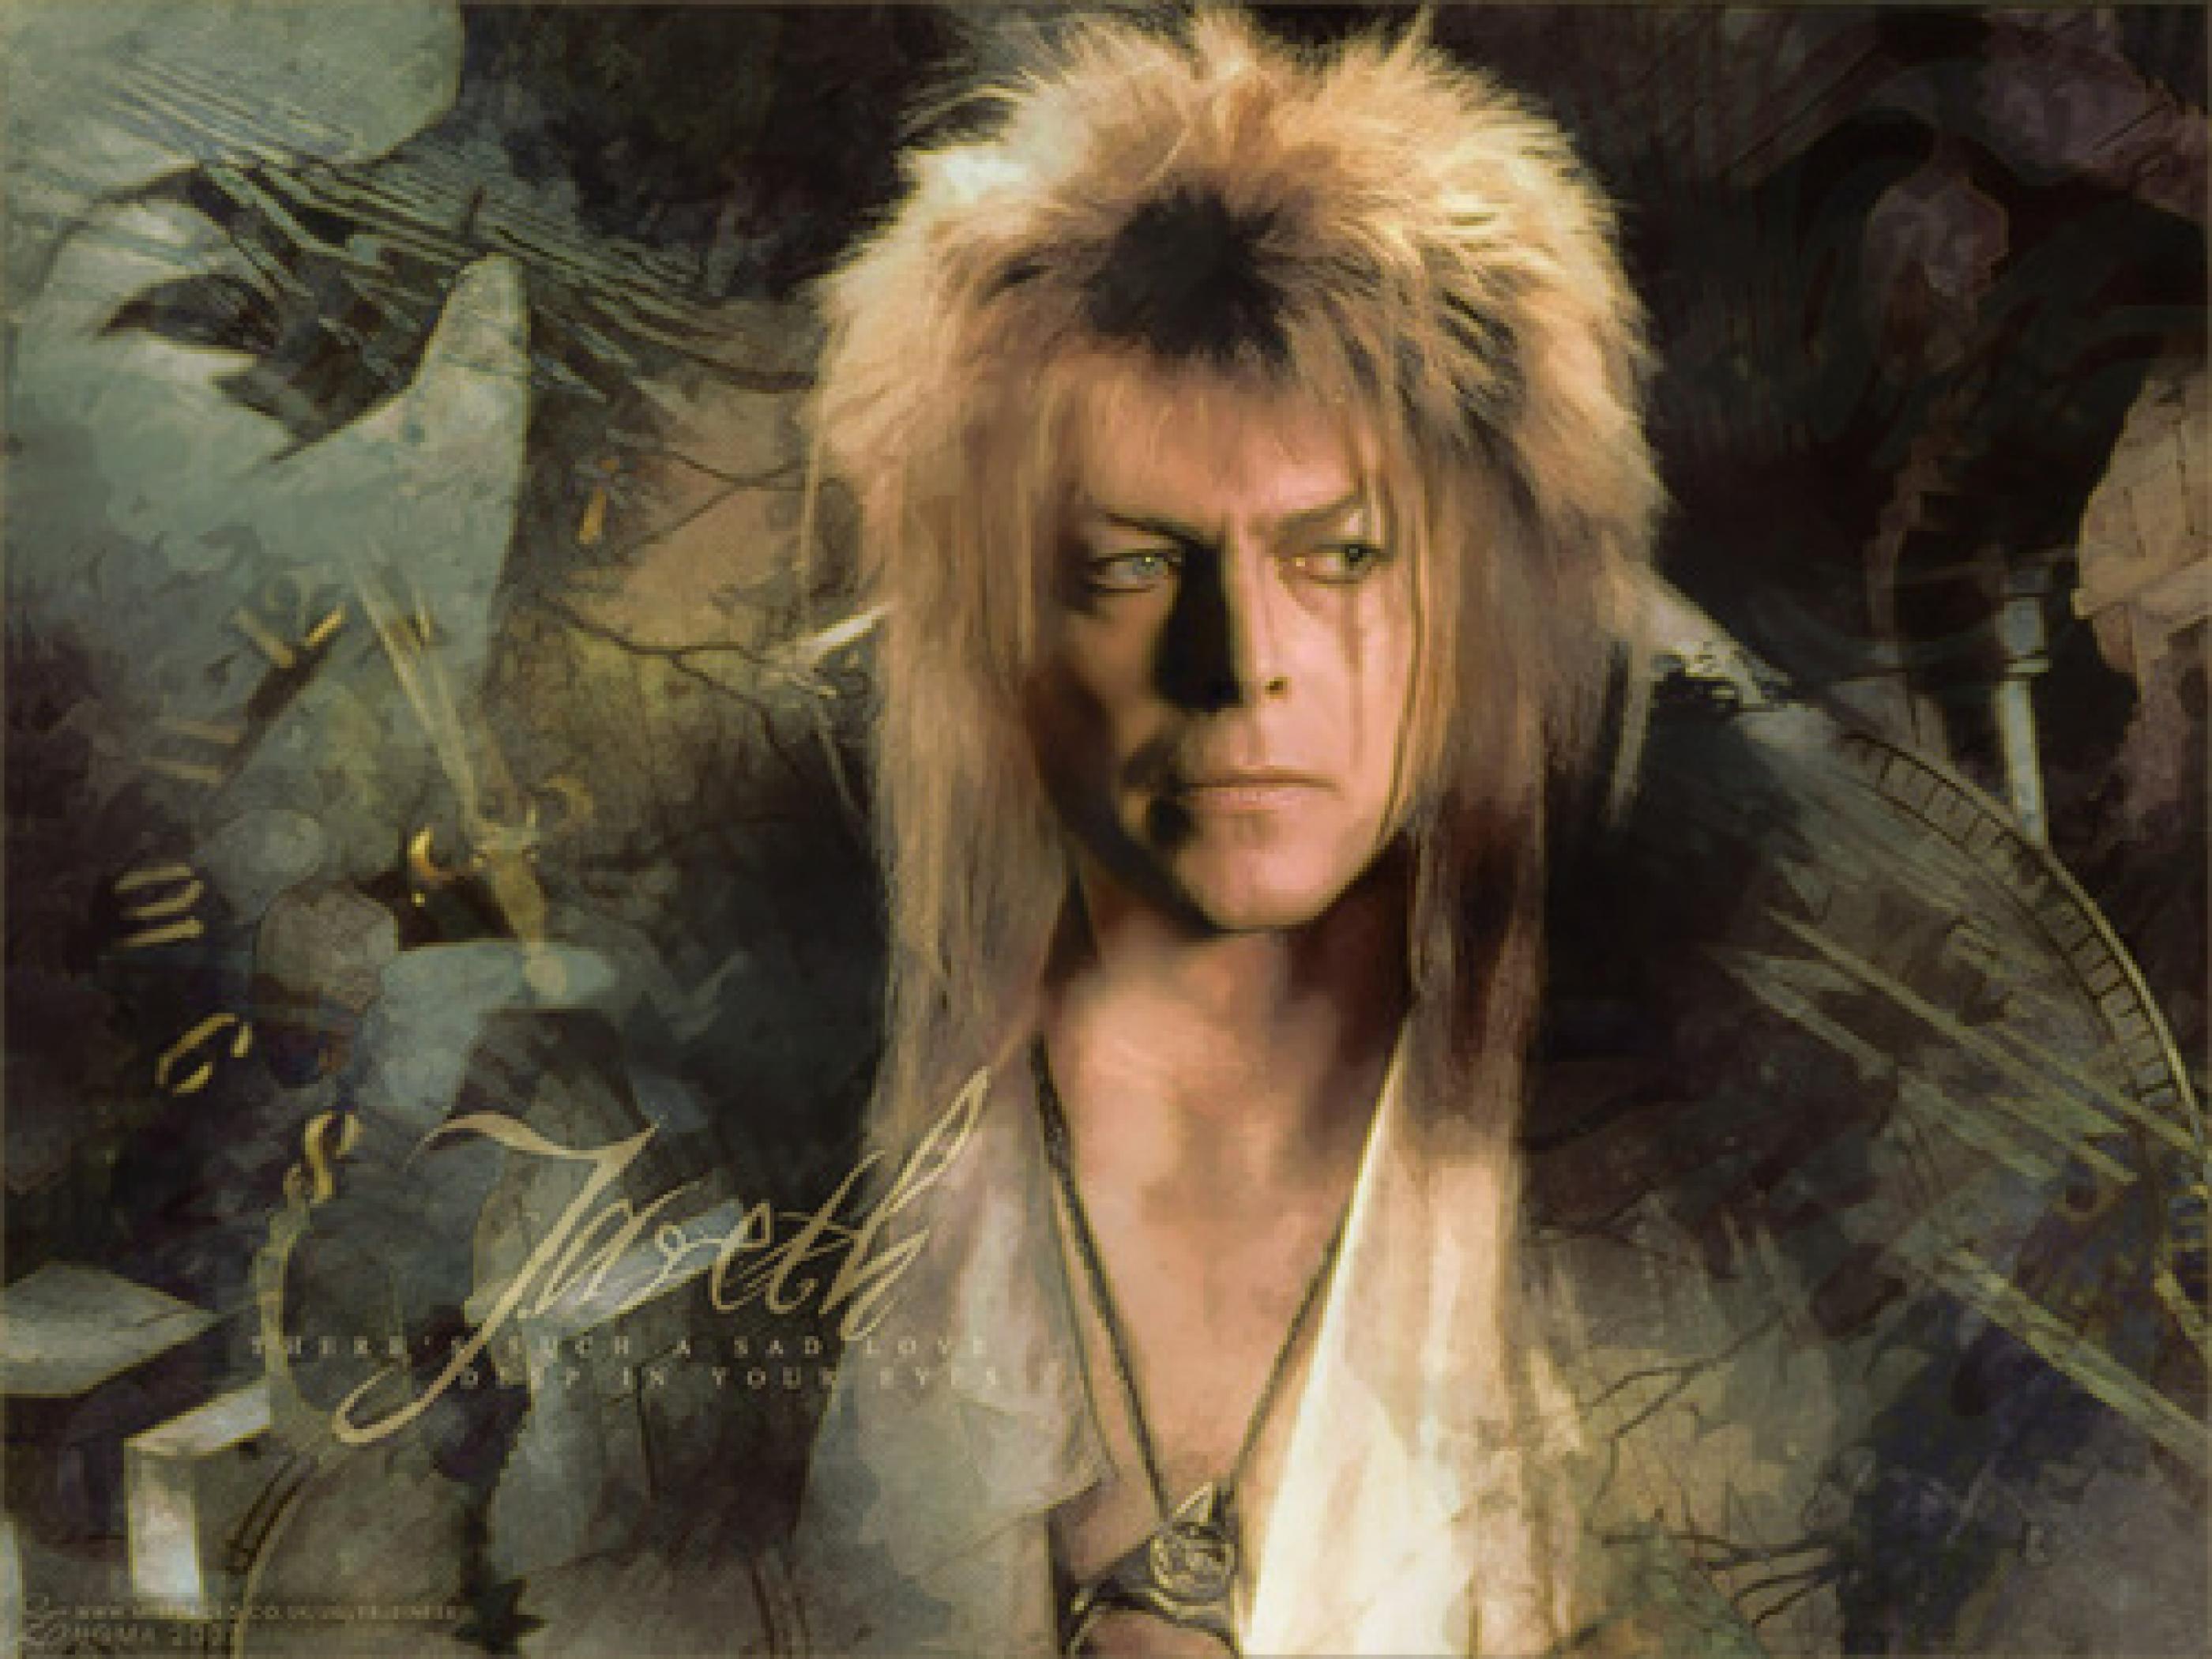 David Bowie Labyrinth Wallpaper 2800x2100